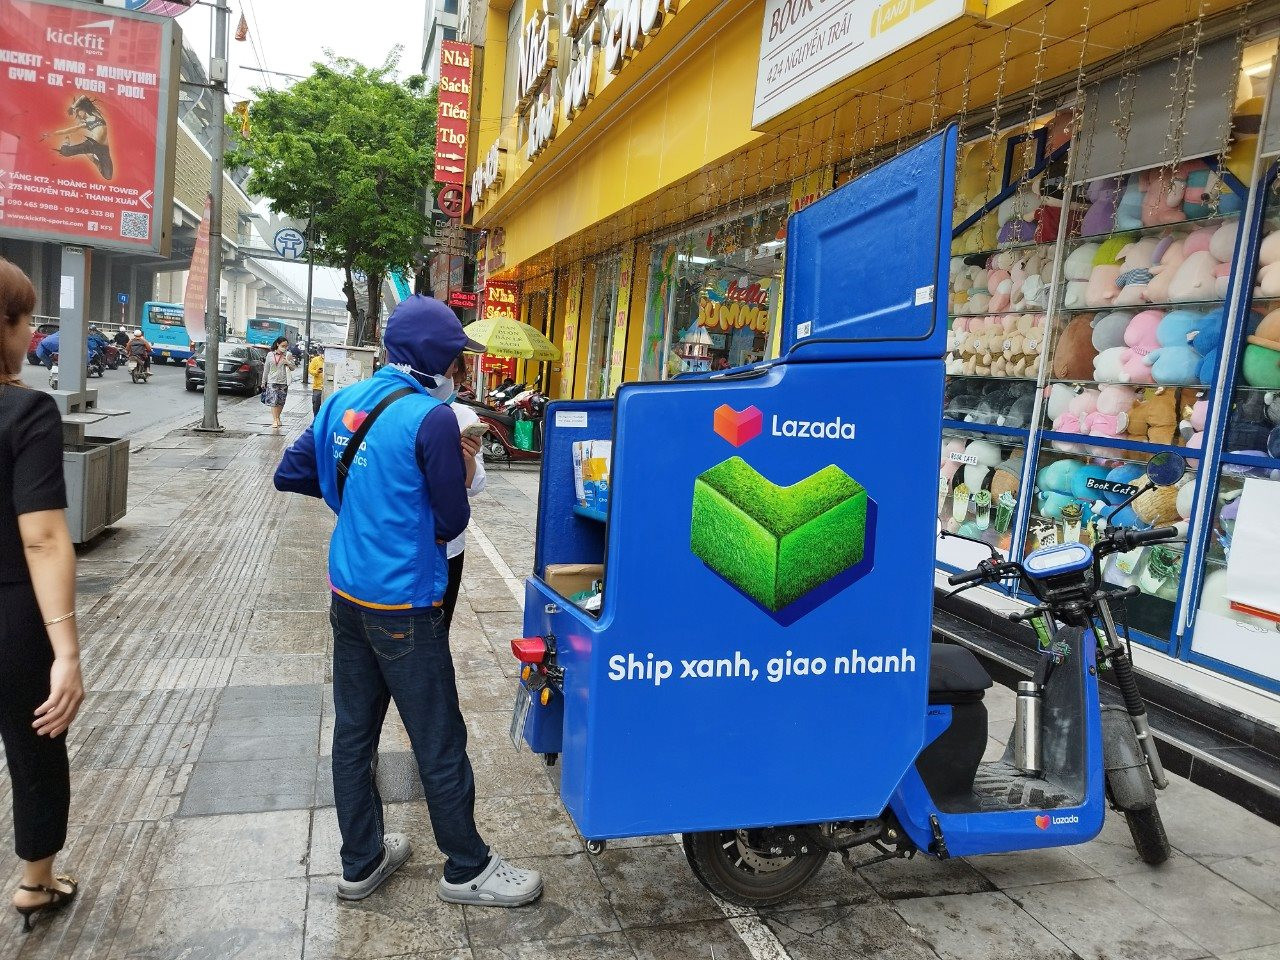 Xuất hiện hãng xe điện Make in Vietnam chuyên dùng để giao hàng: Tự tin có hệ sinh thái pin ưu việt hơn VinFast hay Dat Bike, hợp tác cùng Lazada, DHL, Viettel Post... - Ảnh 2.